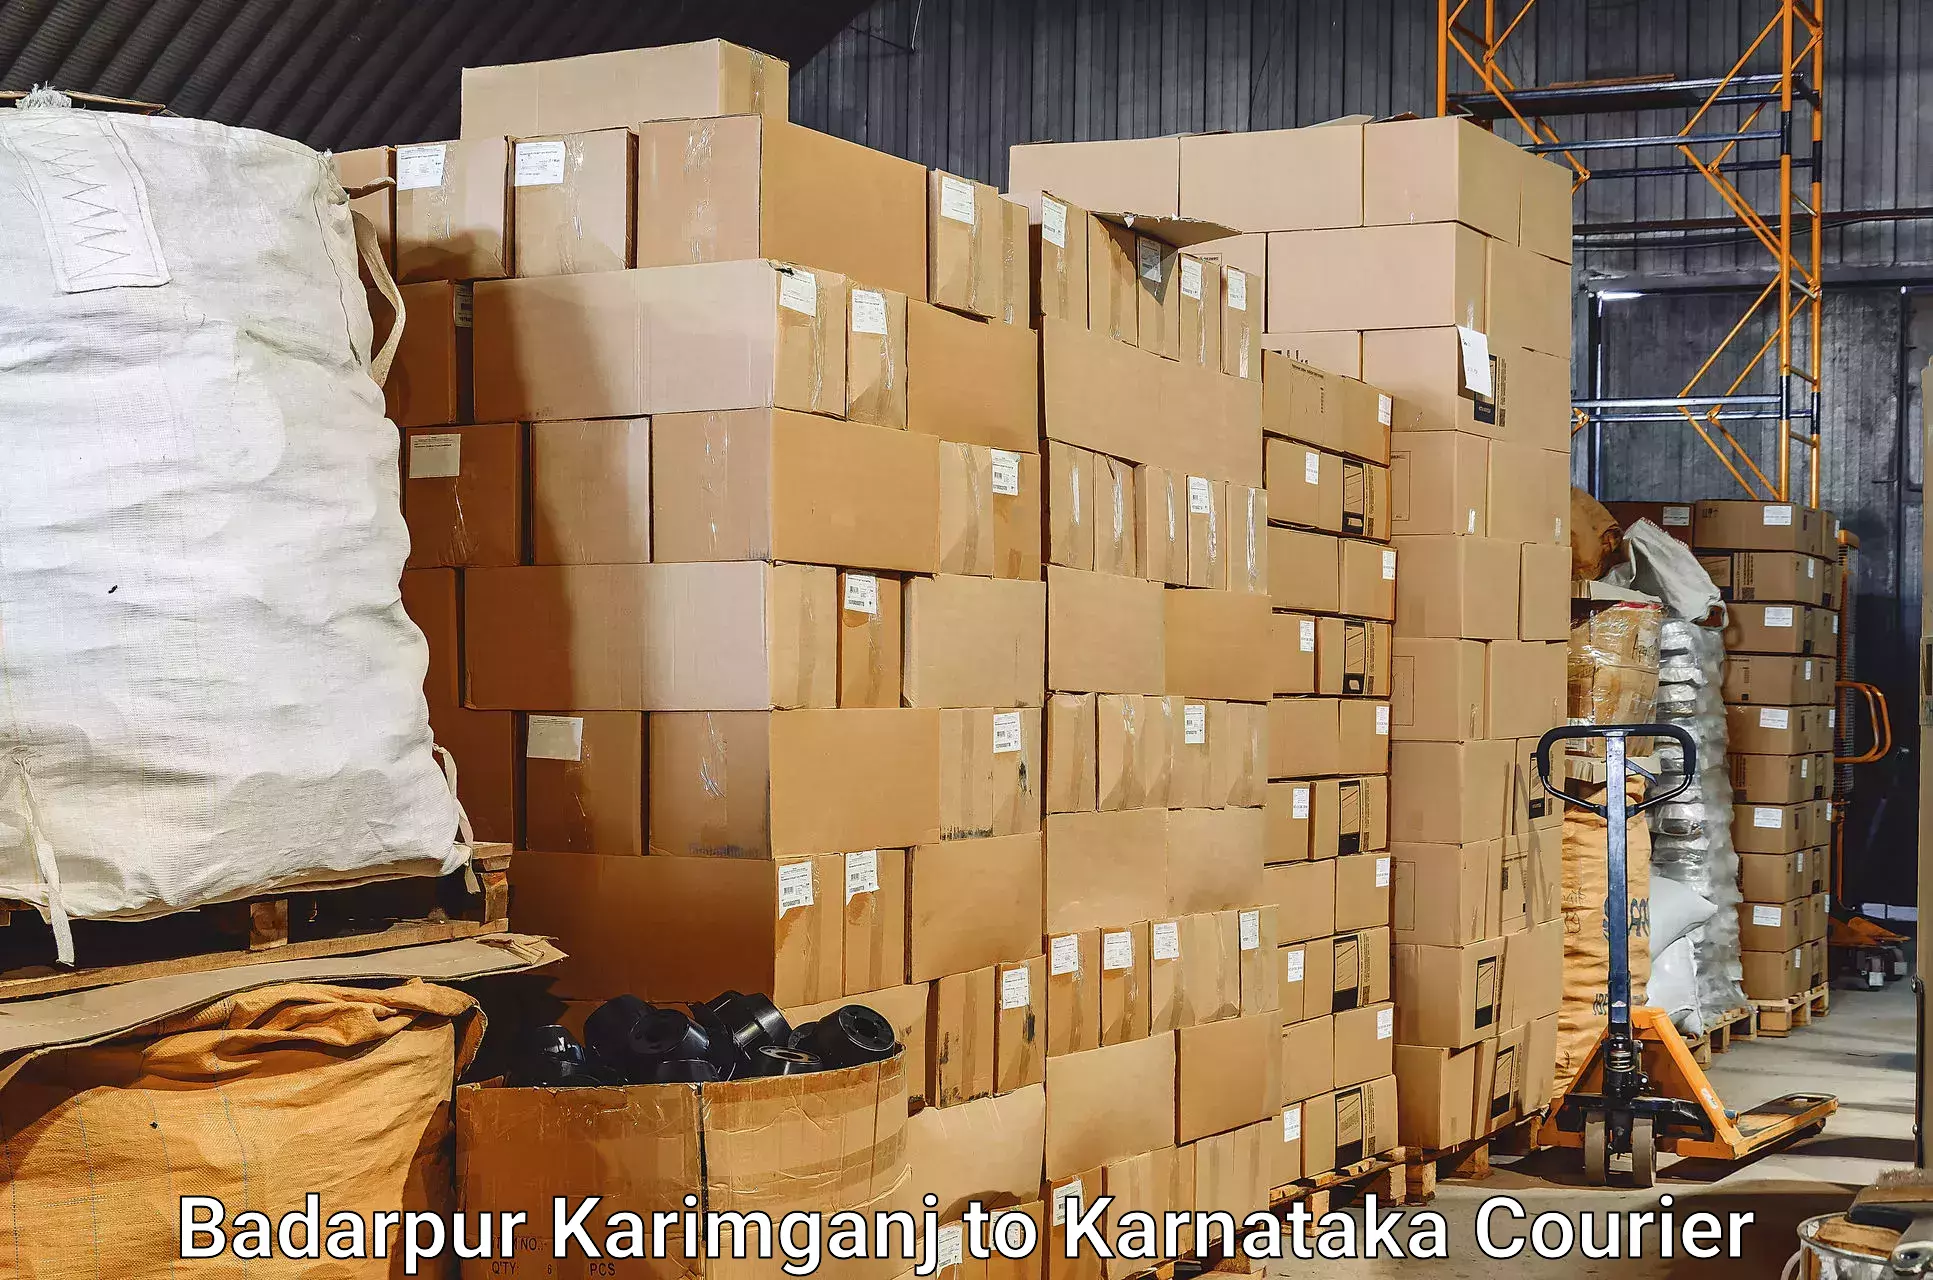 Baggage shipping experts Badarpur Karimganj to Yenepoya Mangalore